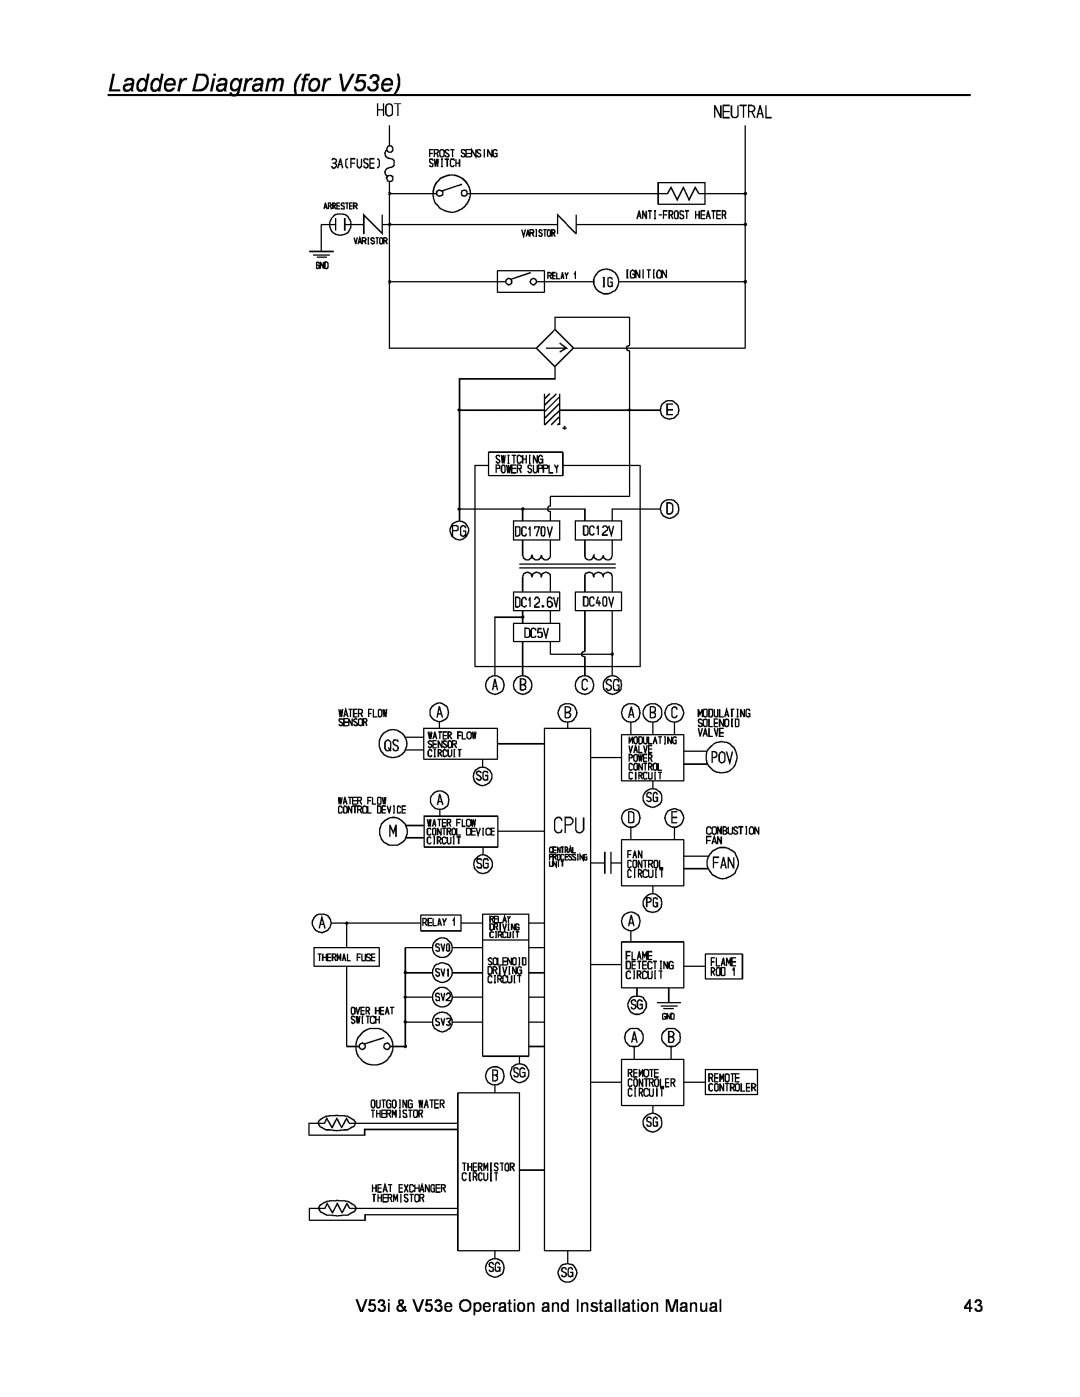 Rinnai V53I, V53E installation manual Ladder Diagram for V53e, V53i & V53e Operation and Installation Manual 